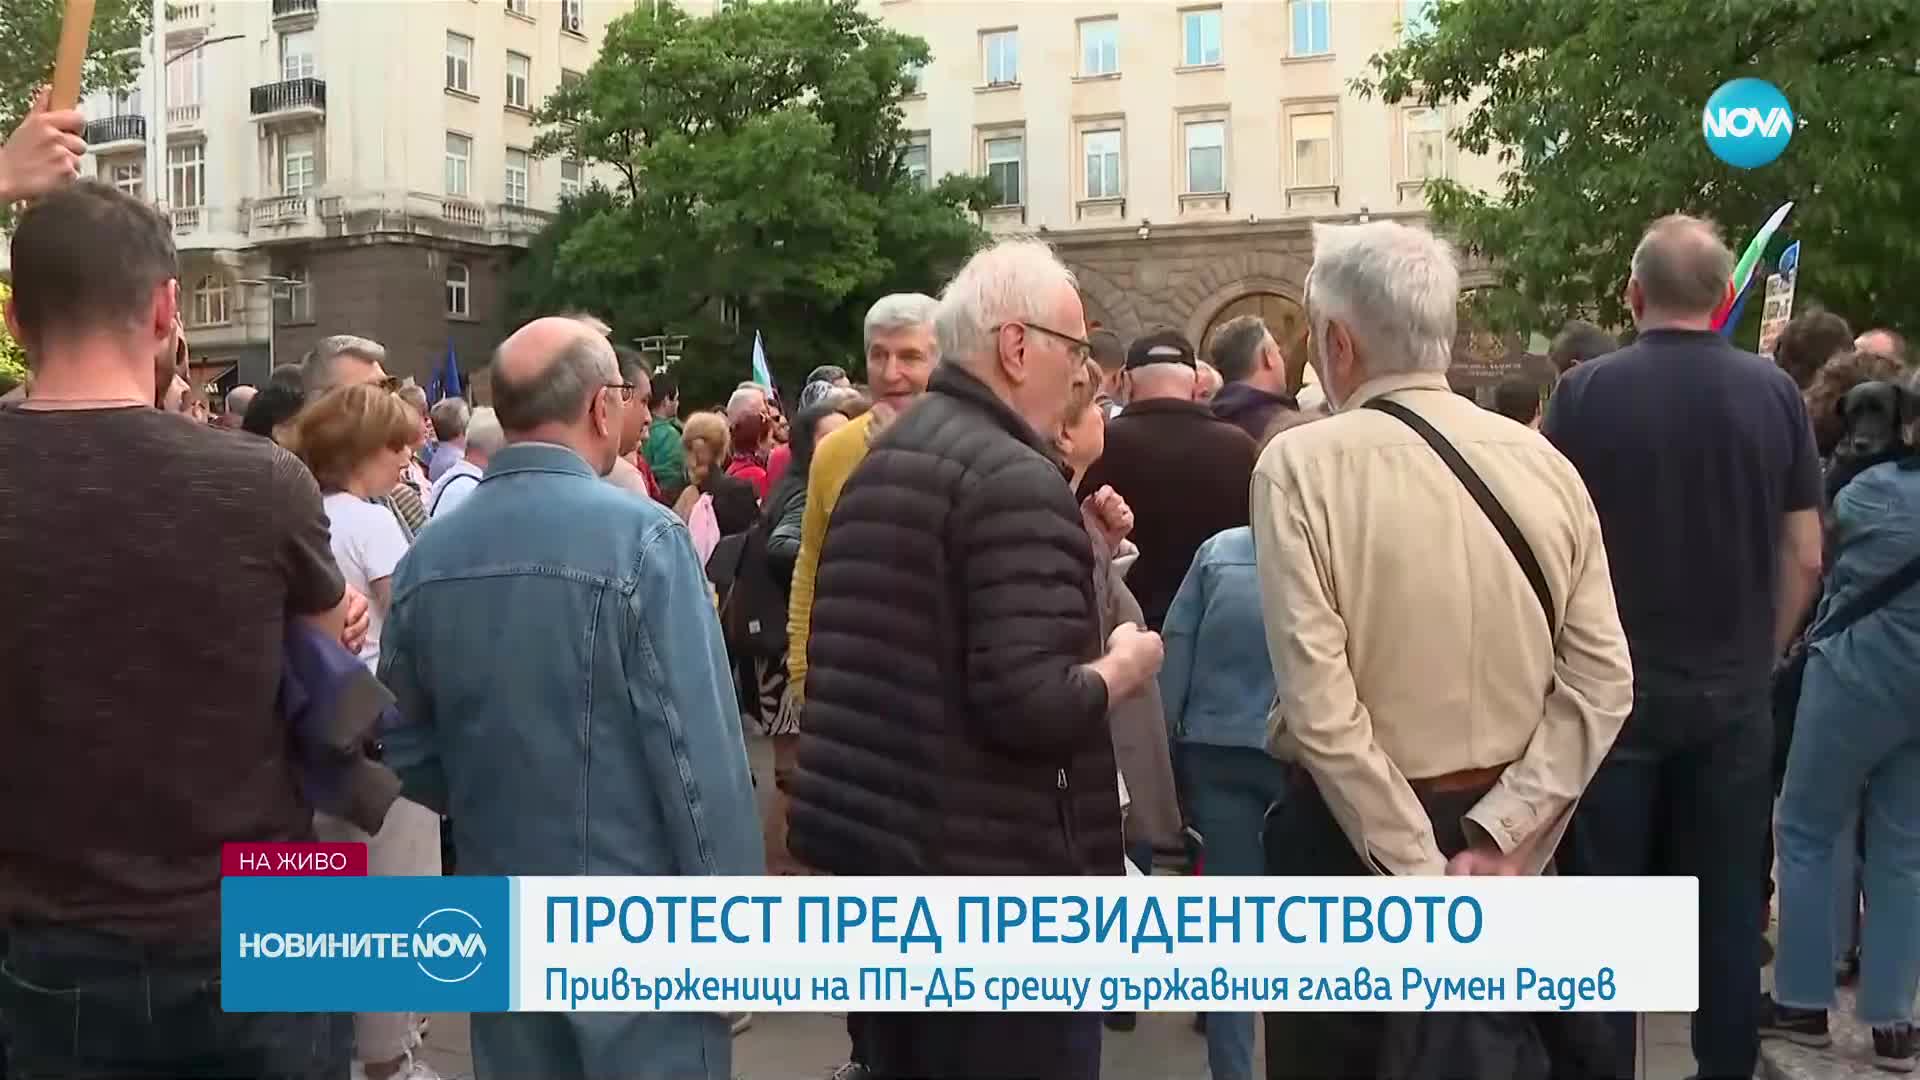 Привърженици на ПП-ДБ се събраха на протест пред Президенството